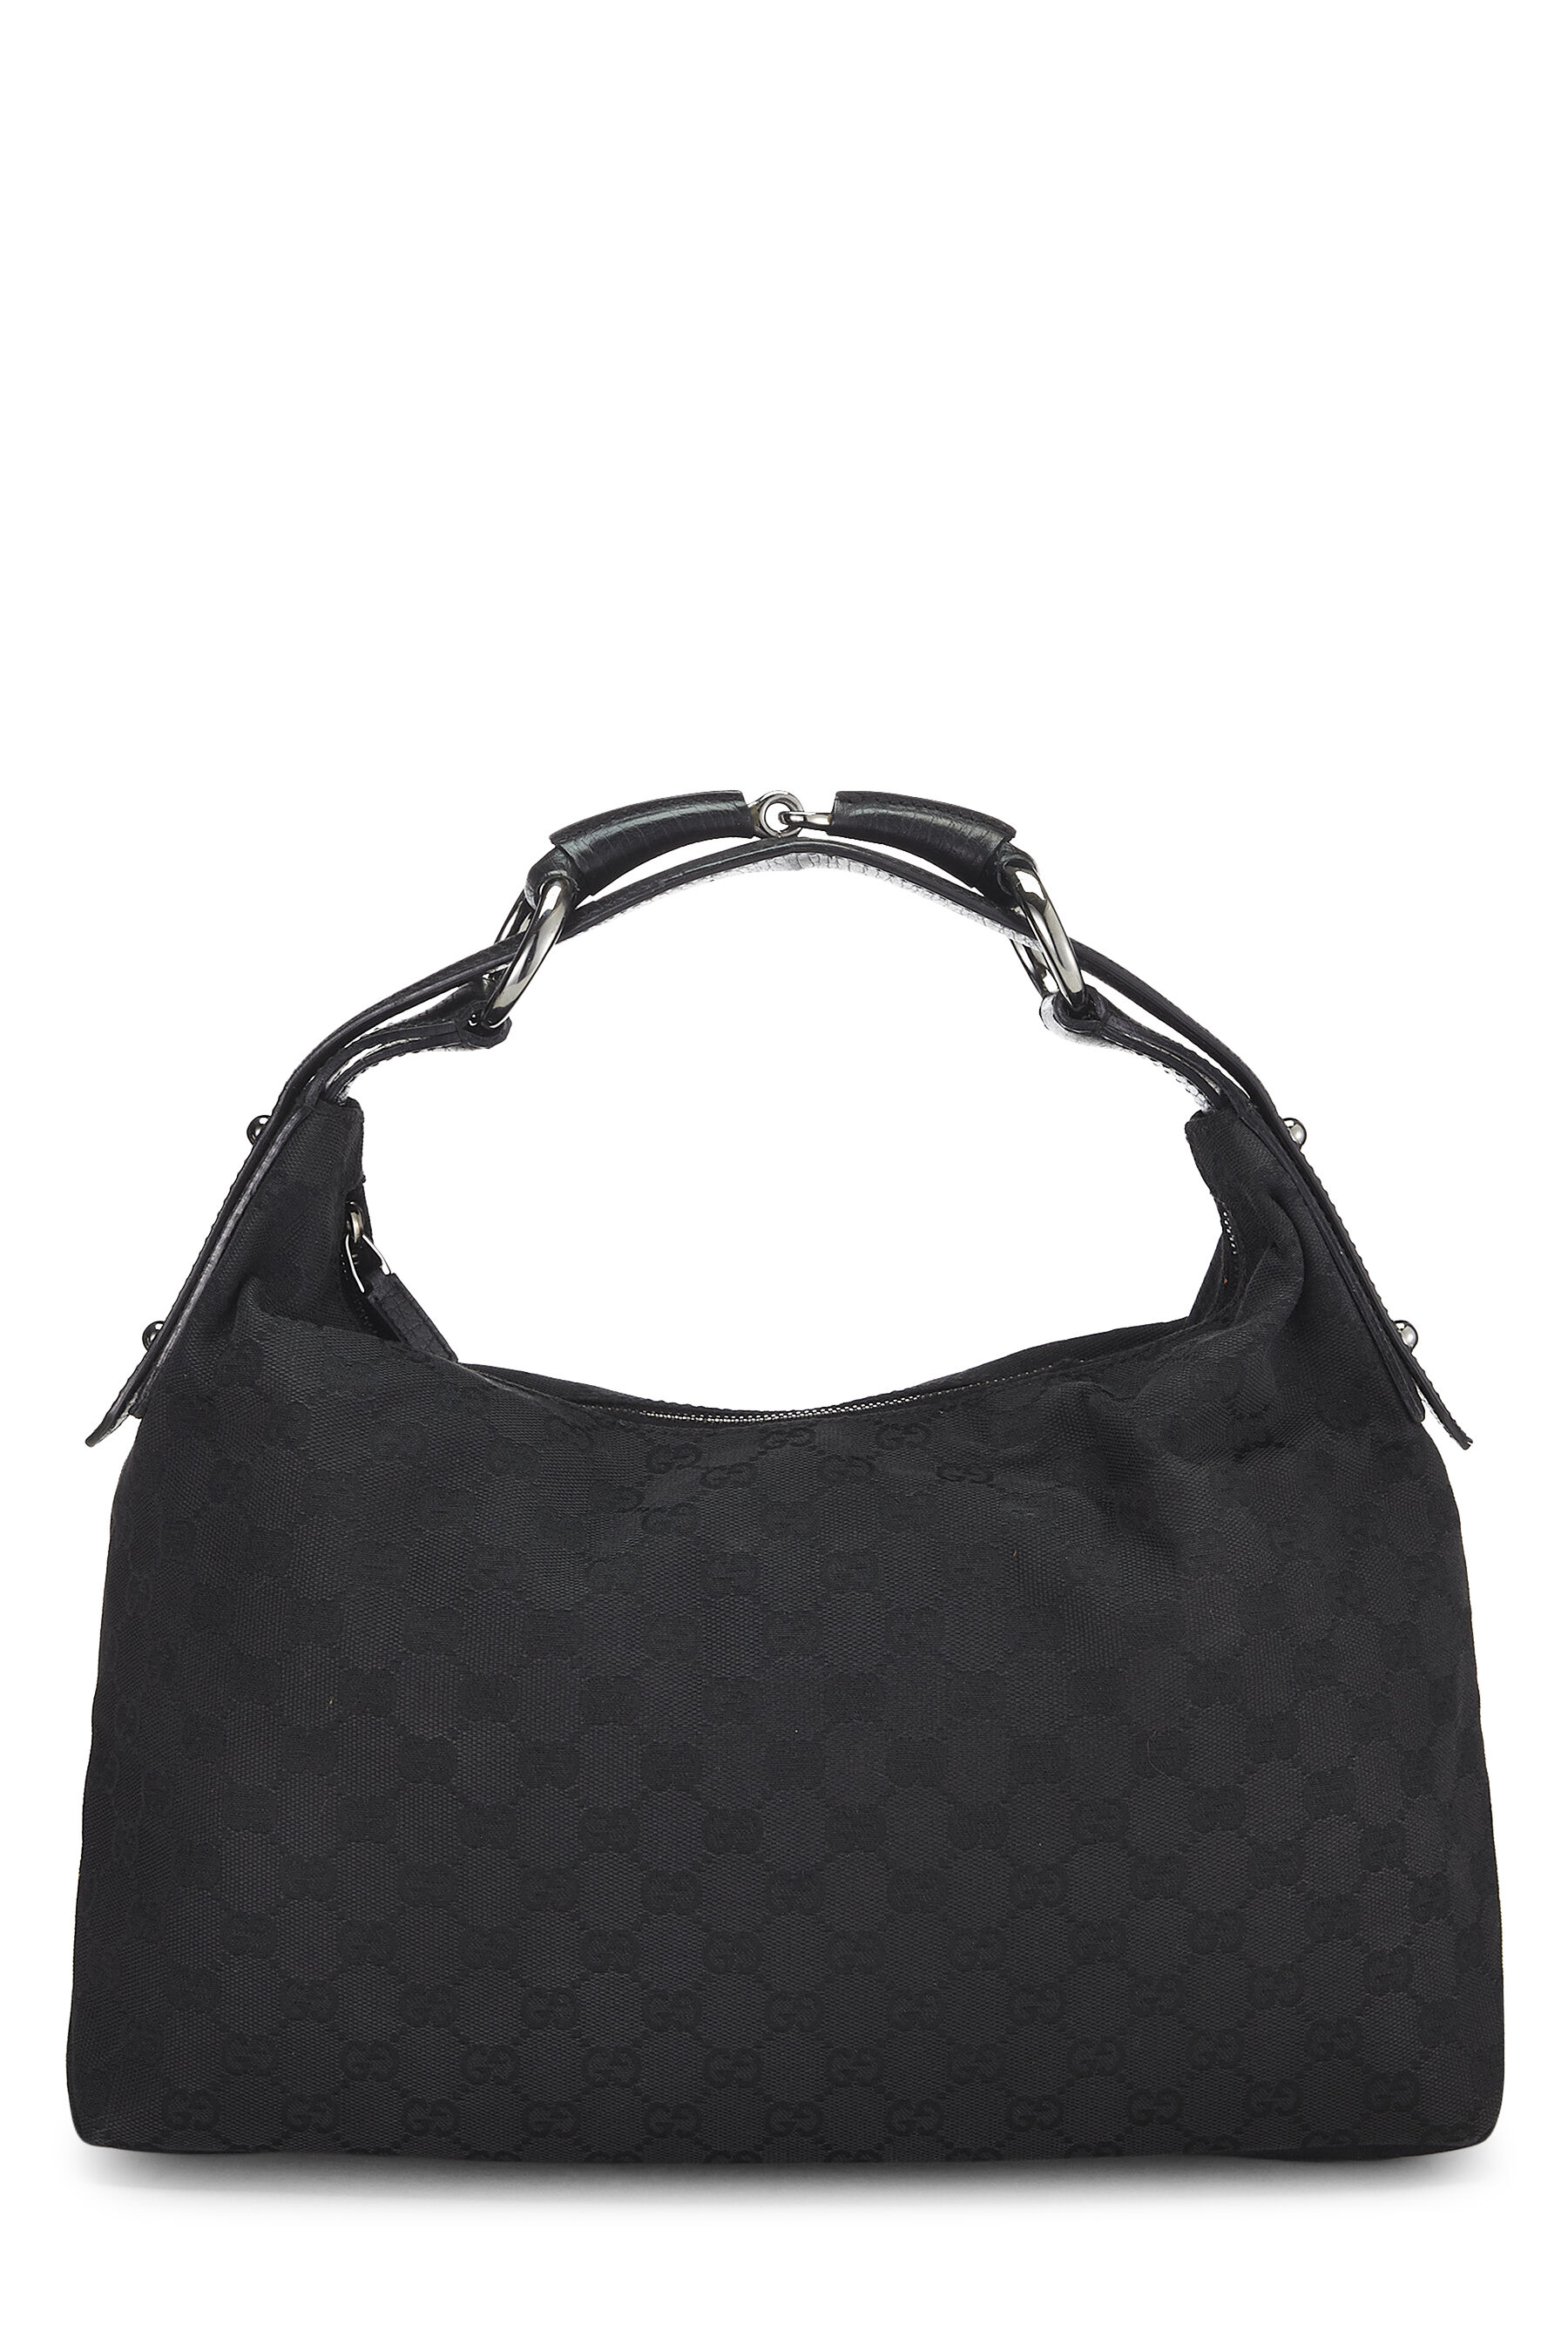 Gucci Large Horsebit Hobo - Black Hobos, Handbags - GUC1367389